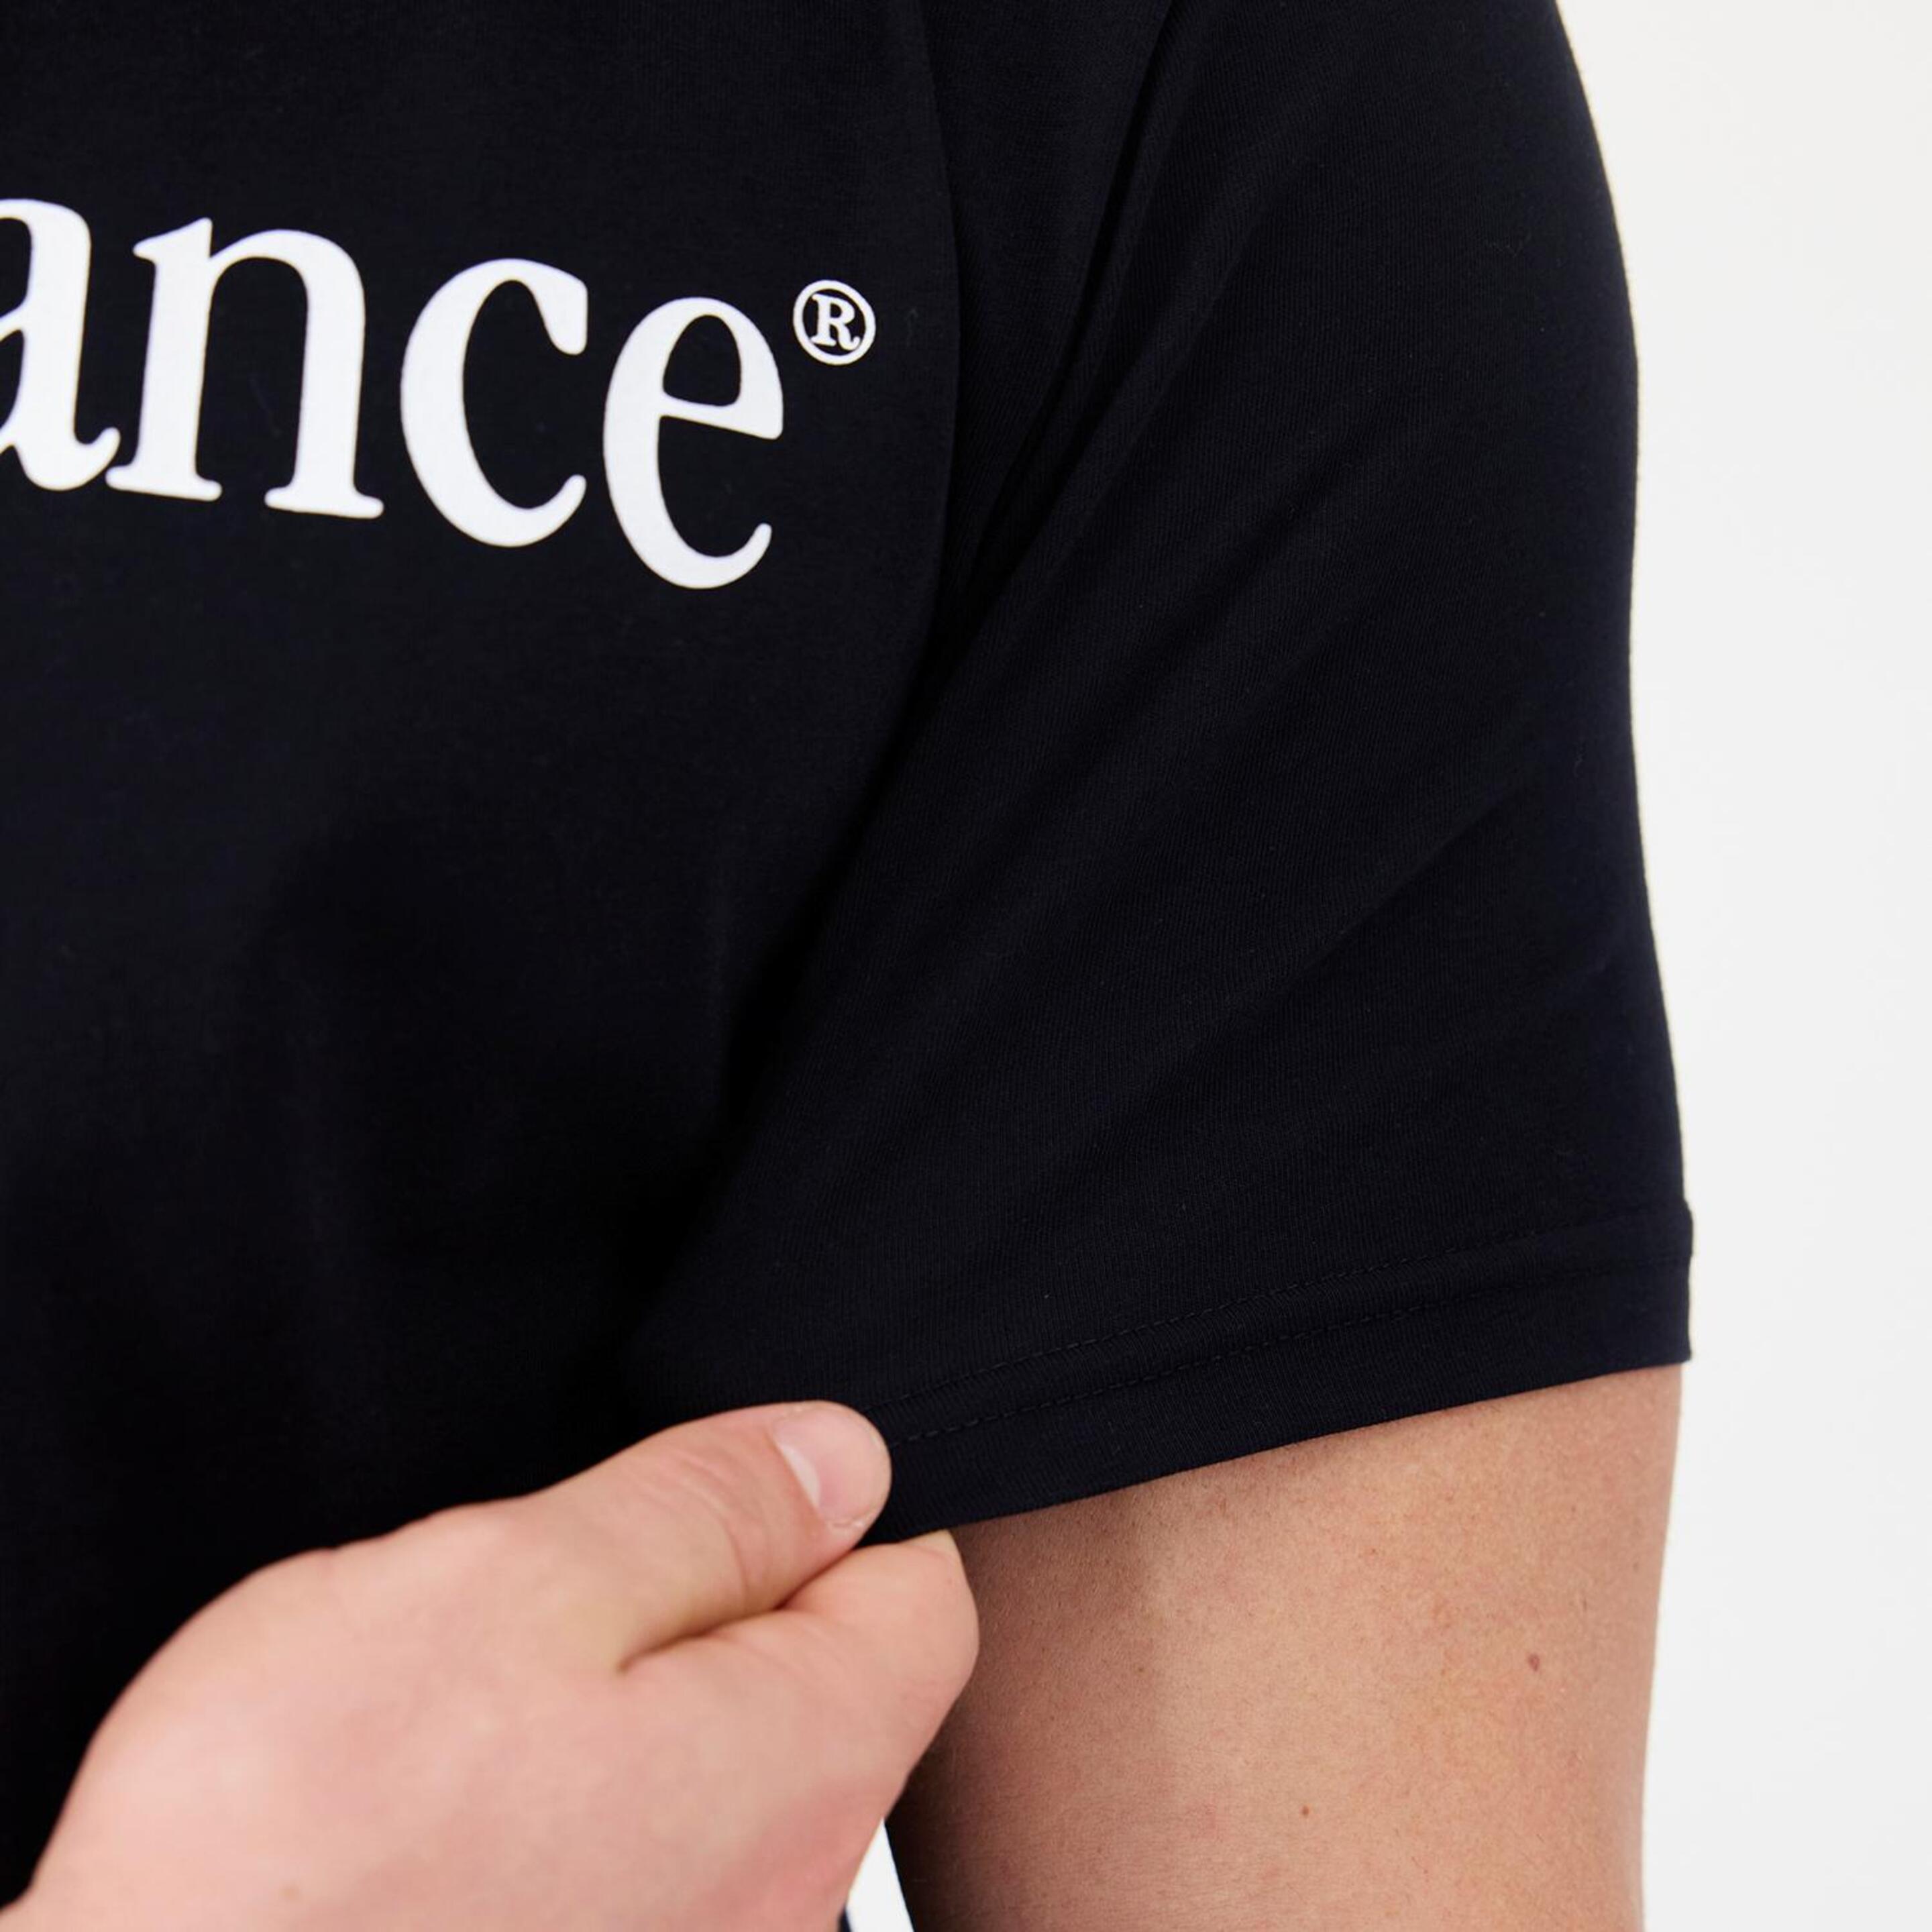 New Balance Vintage - Negro - Camiseta Hombre